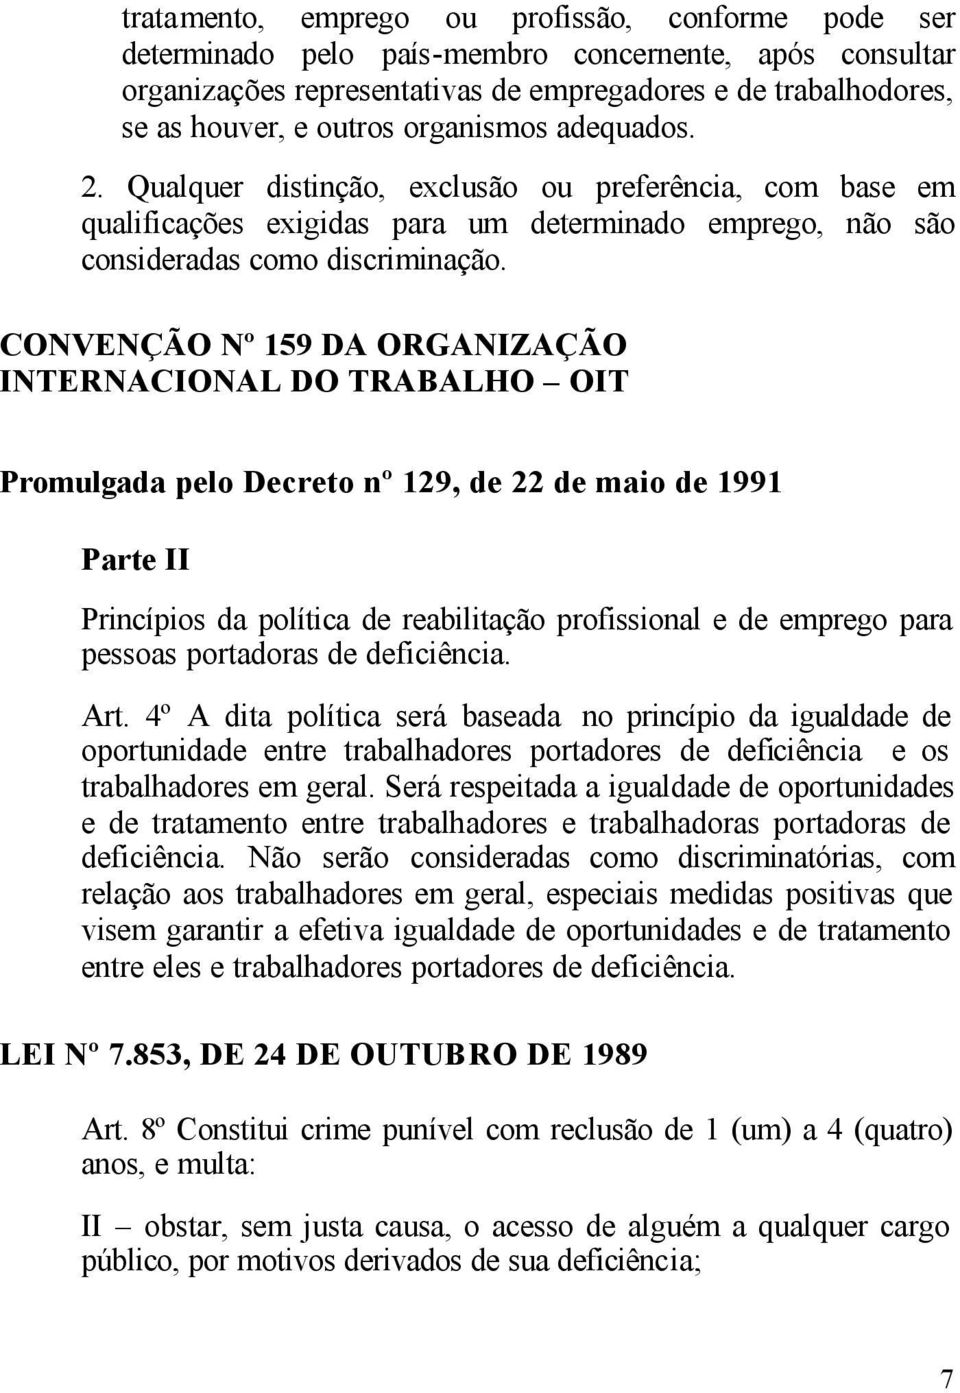 CONVENÇÃO Nº 159 DA ORGANIZAÇÃO INTERNACIONAL DO TRABALHO OIT Promulgada pelo Decreto nº 129, de 22 de maio de 1991 Parte II Princípios da política de reabilitação profissional e de emprego para